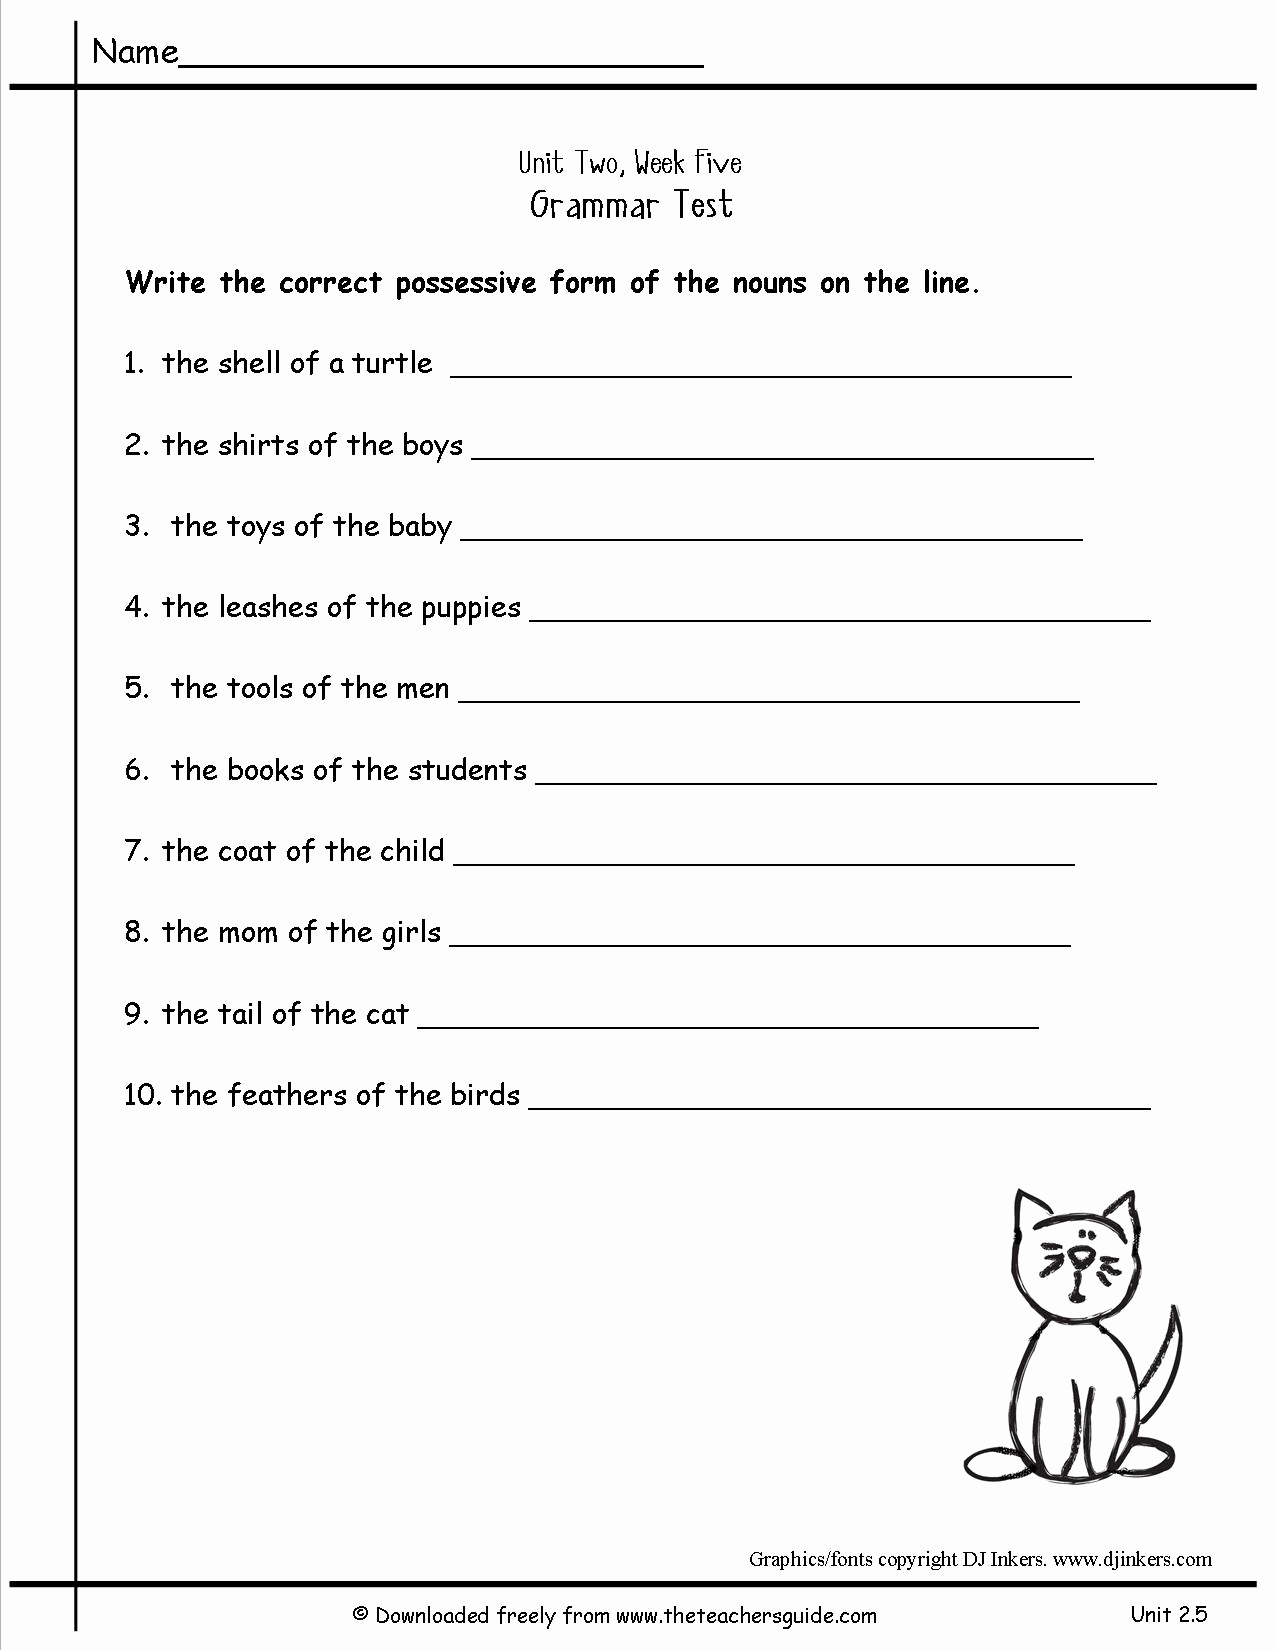 Possessive Pronouns Worksheet 2nd Grade Unique 16 Best Of 2nd Grade Pronoun Worksheet Pronoun